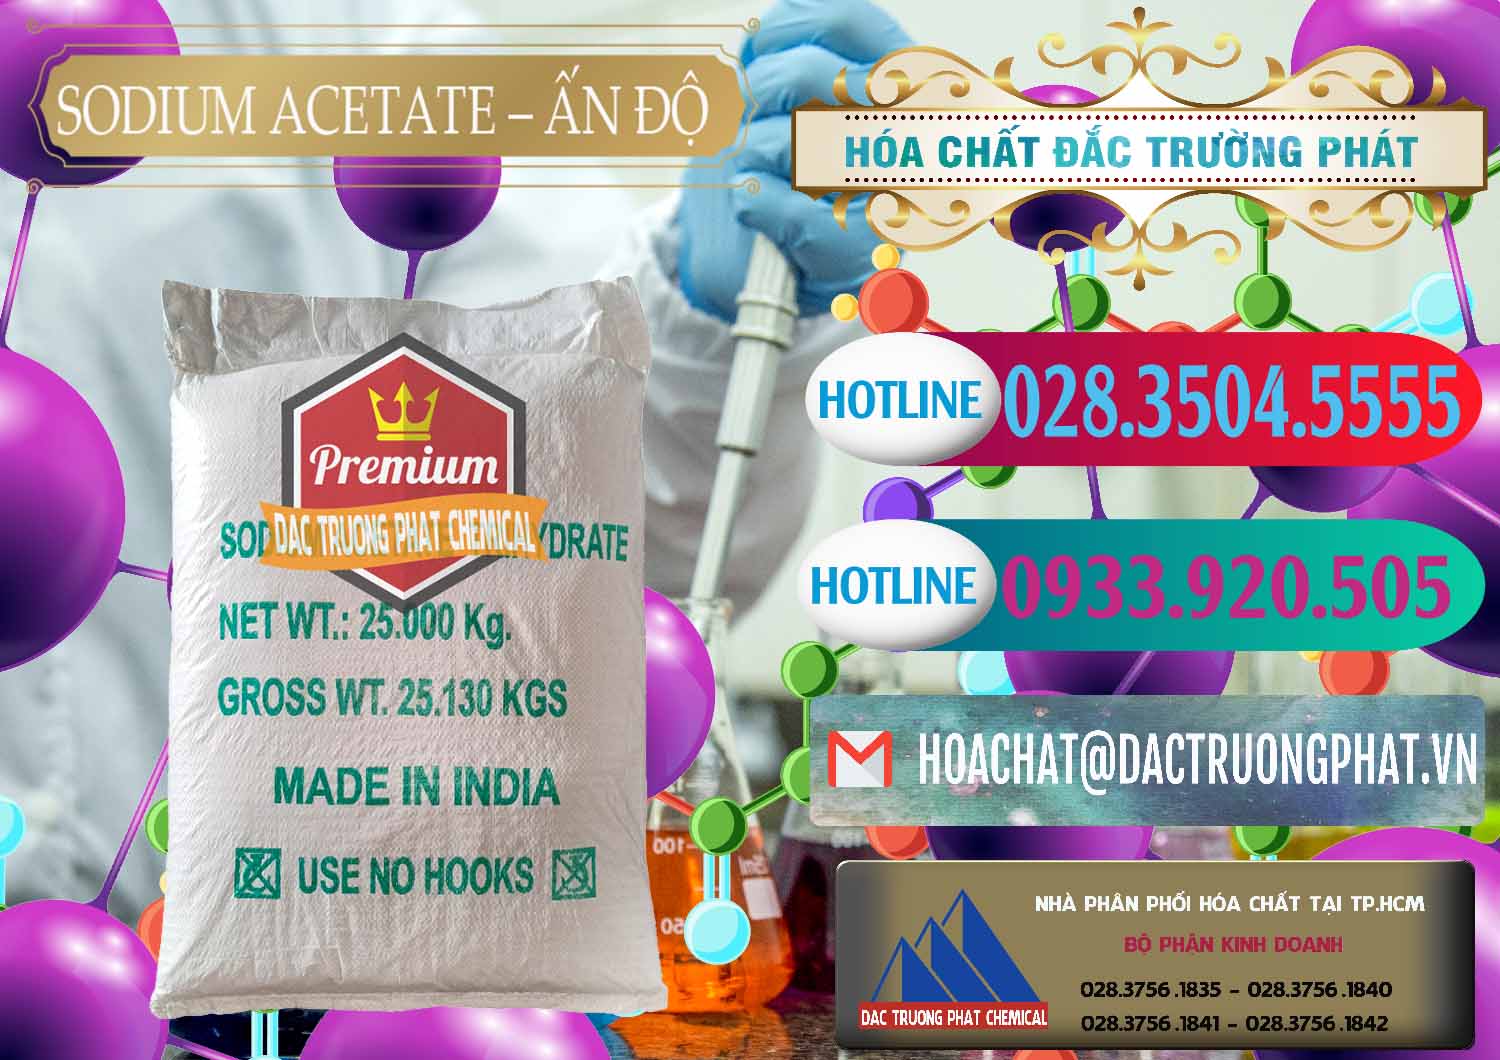 Cty kinh doanh & bán Sodium Acetate - Natri Acetate Ấn Độ India - 0133 - Bán _ cung cấp hóa chất tại TP.HCM - truongphat.vn